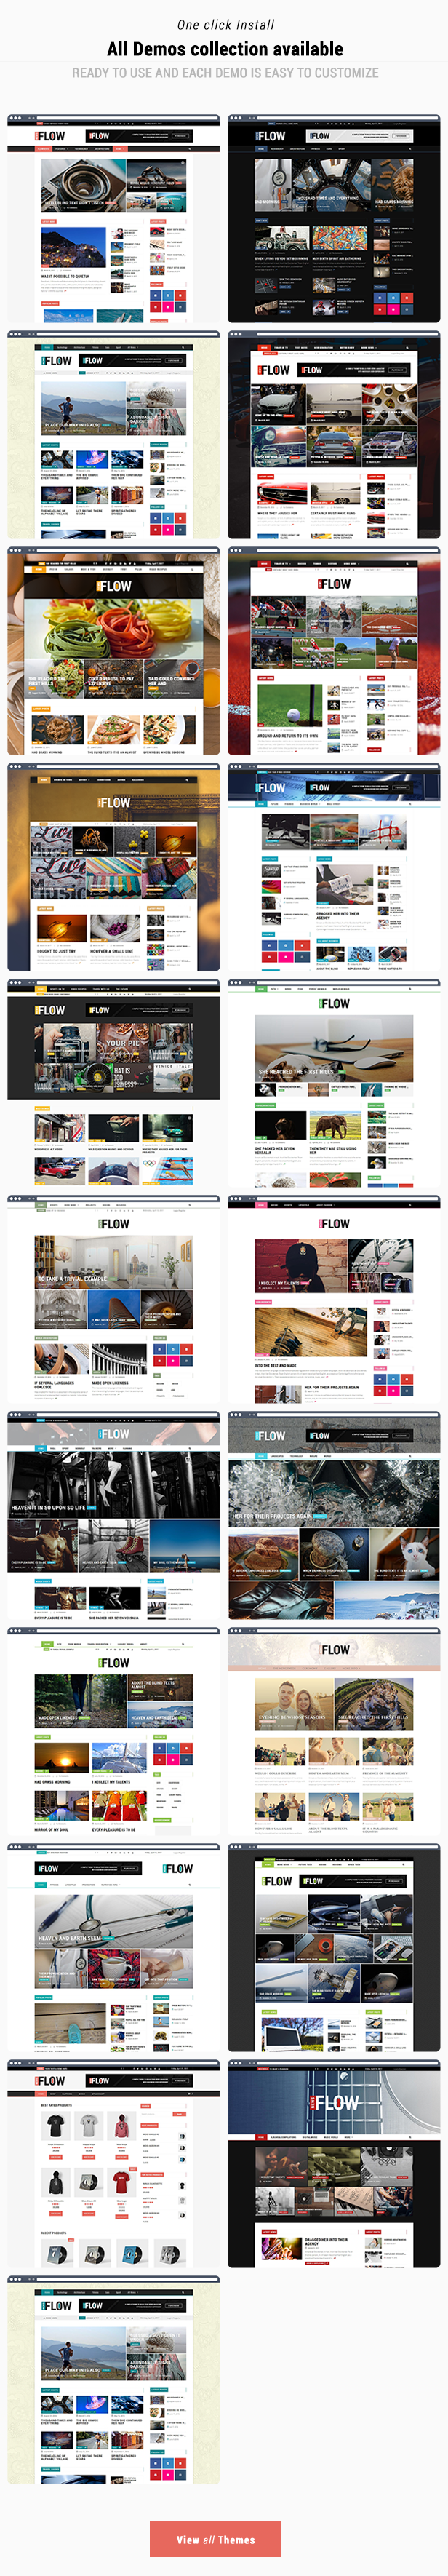 Flow News - Magazin und Blog WordPress Theme - 3